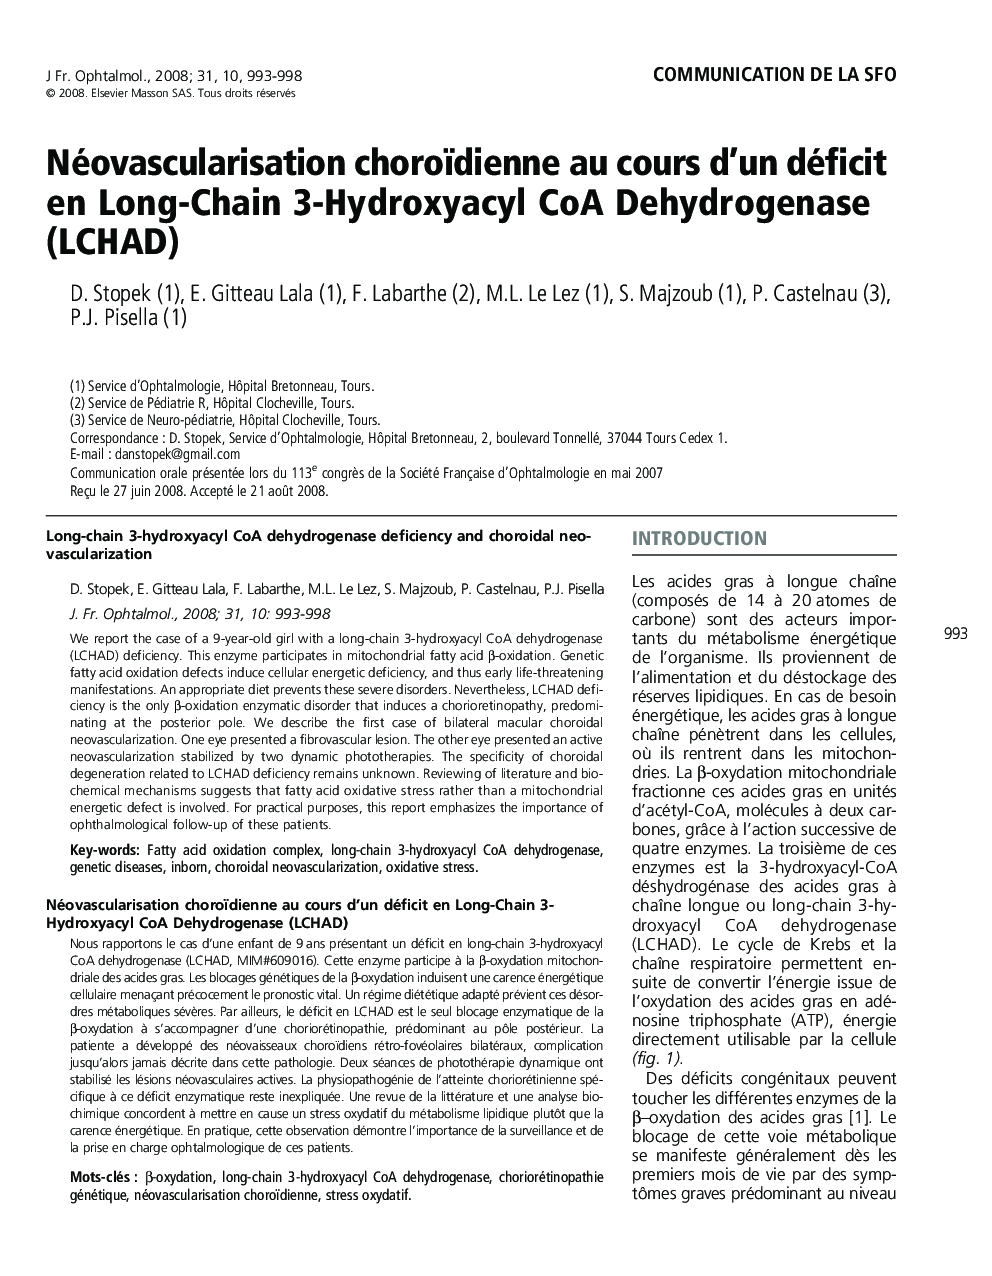 Néovascularisation choroïdienne au cours d'un déficit en Long-Chain 3-Hydroxyacyl CoA Dehydrogenase (LCHAD)